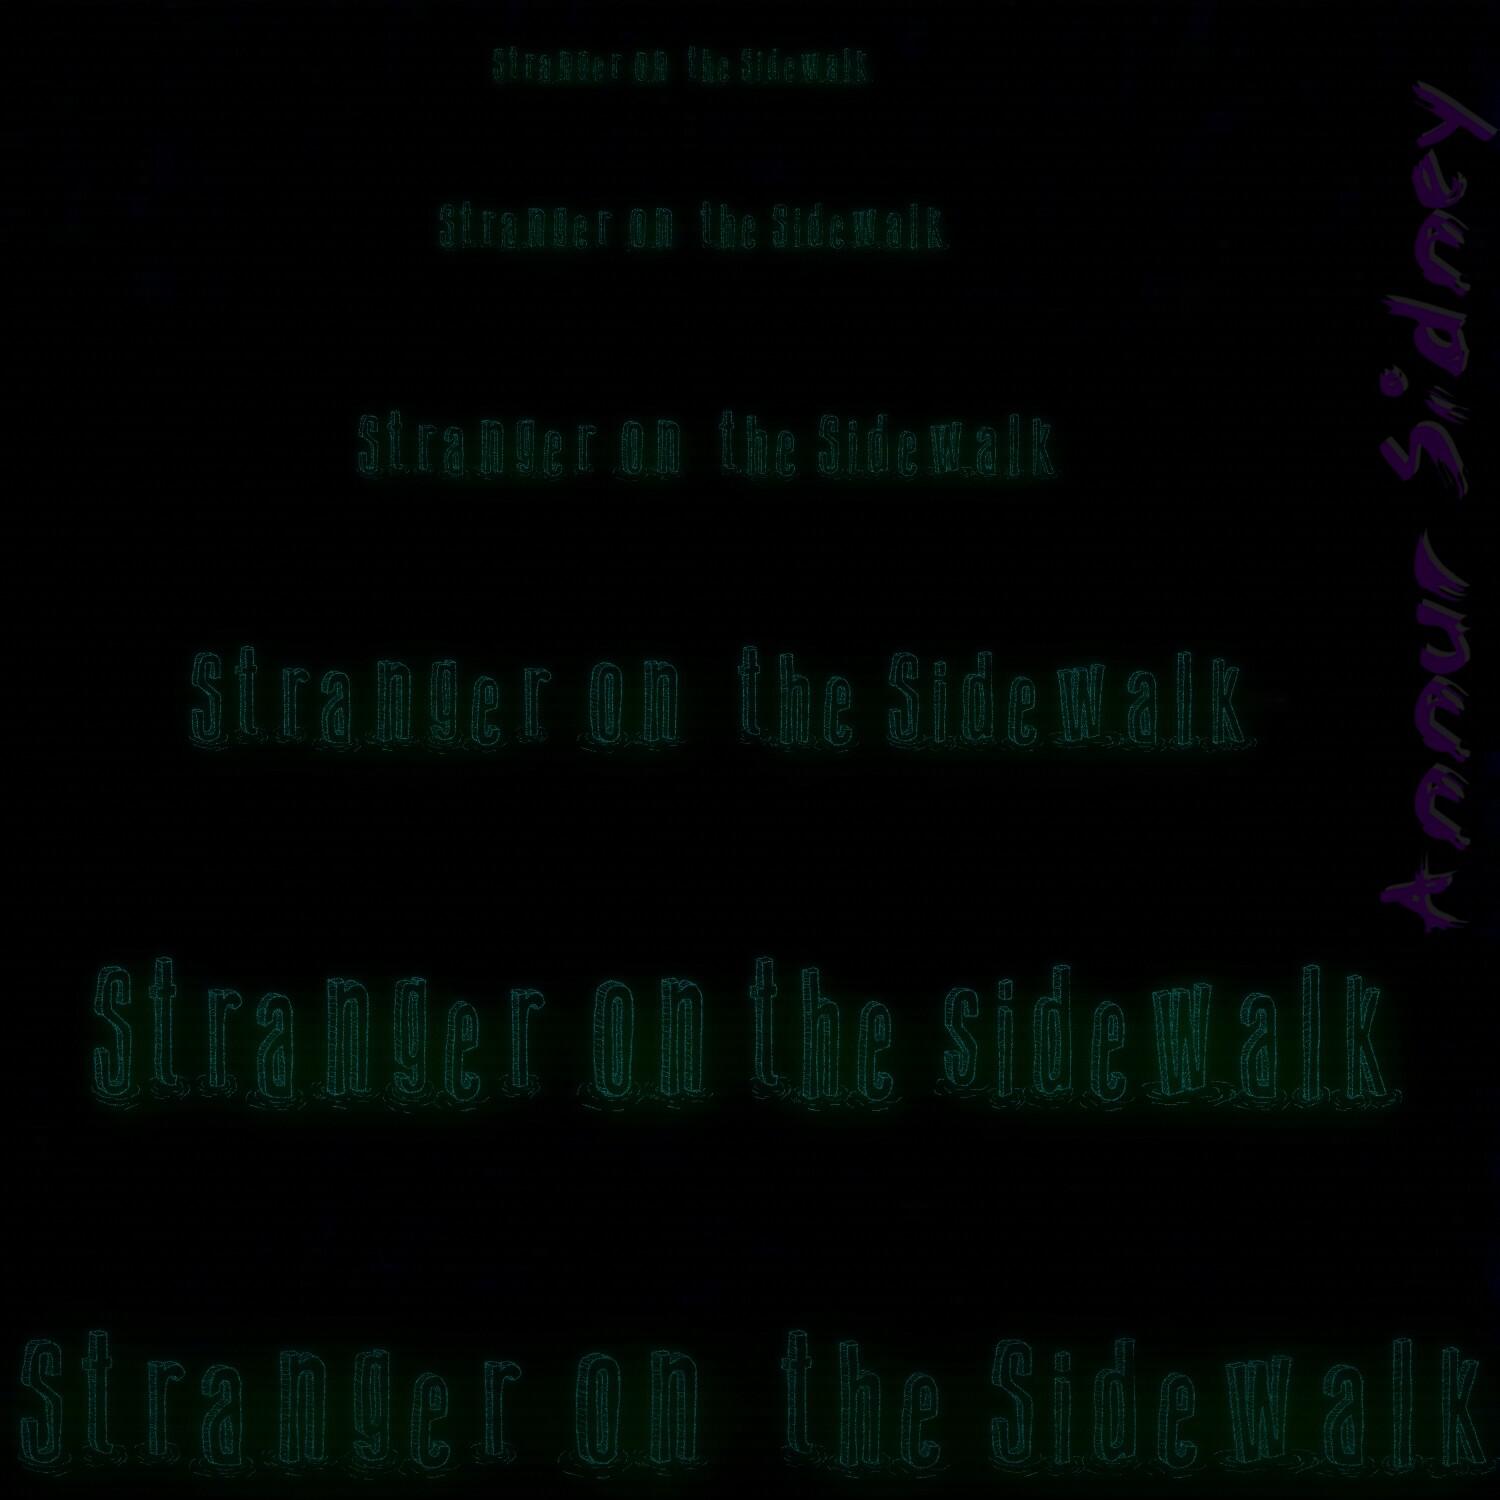 Stranger on the Sidewalk